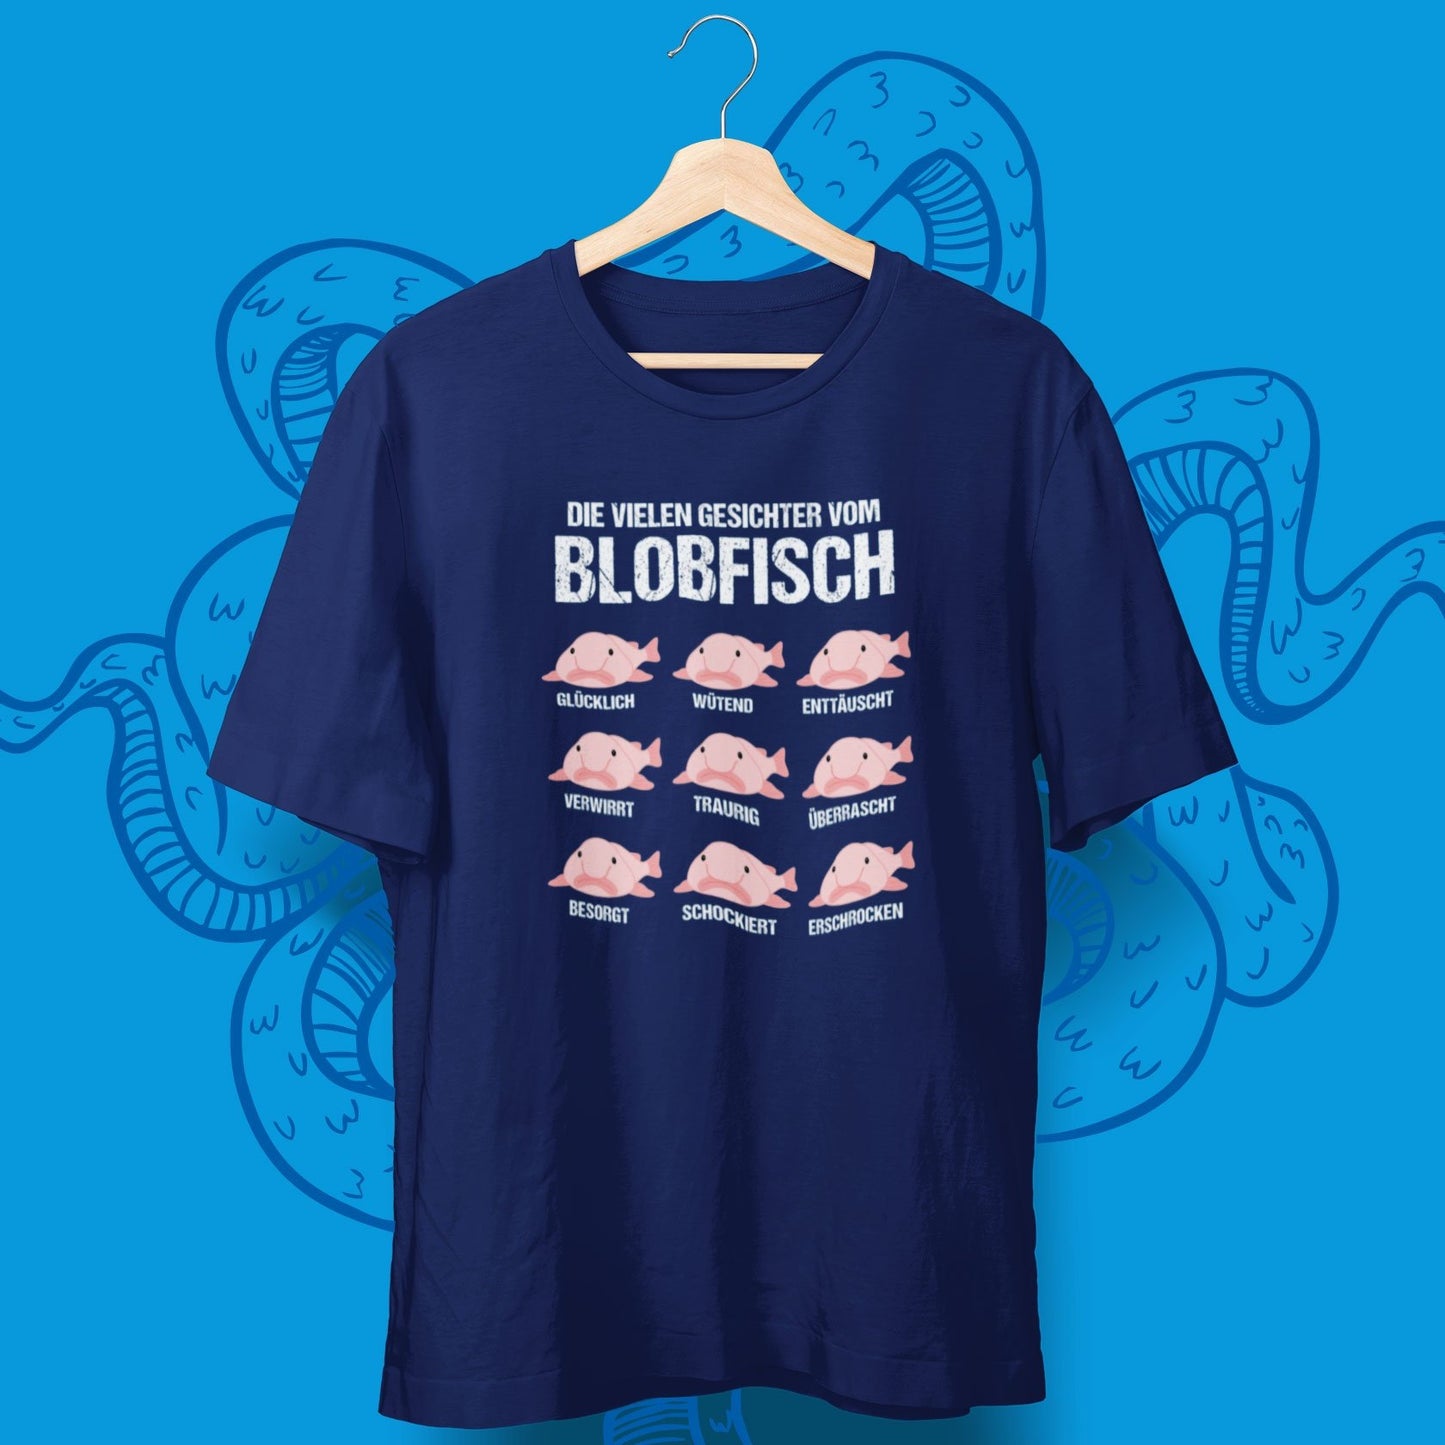 Die vielen Gesichter vom Blobfisch T-Shirt - aqua-wave.de